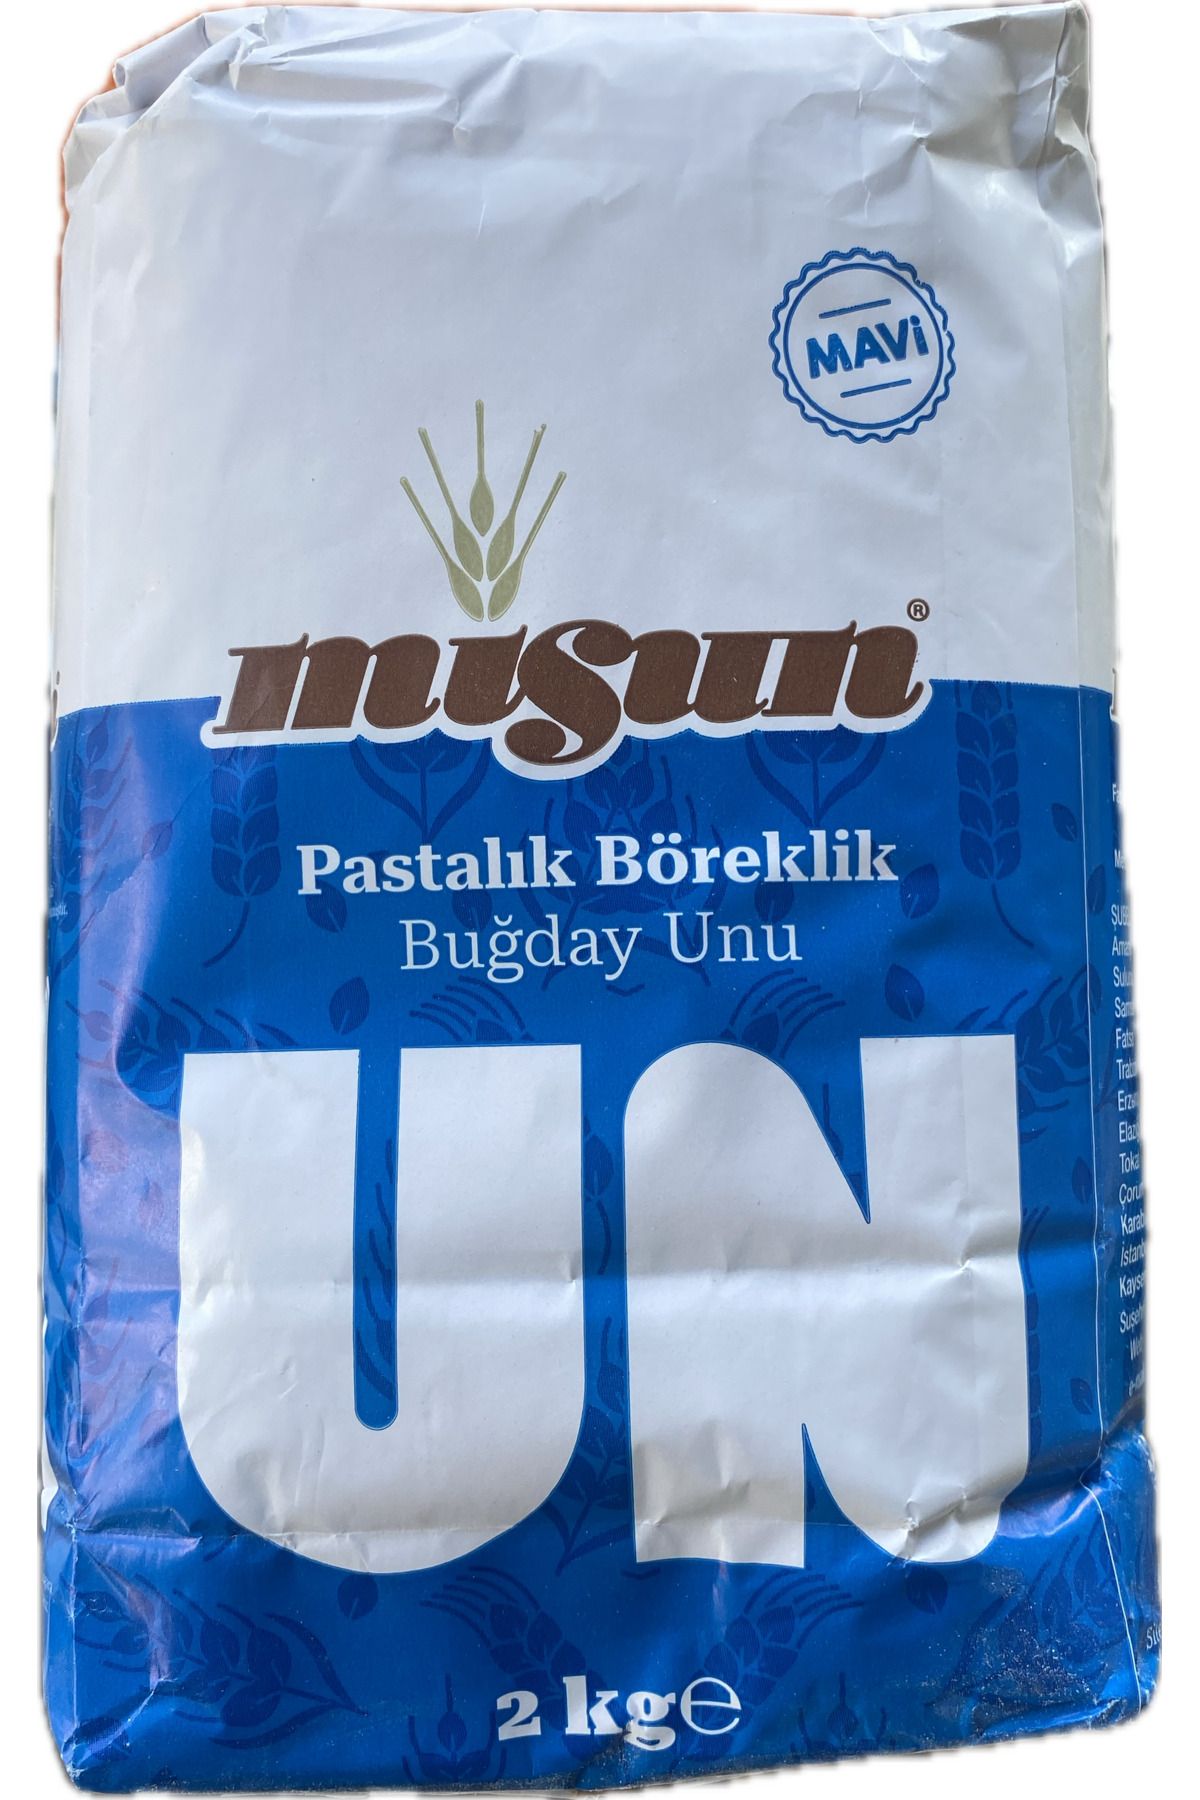 MİS UN Şenler - Mavi Un 2 Kg - Pastalık Böreklik Buğday Unu